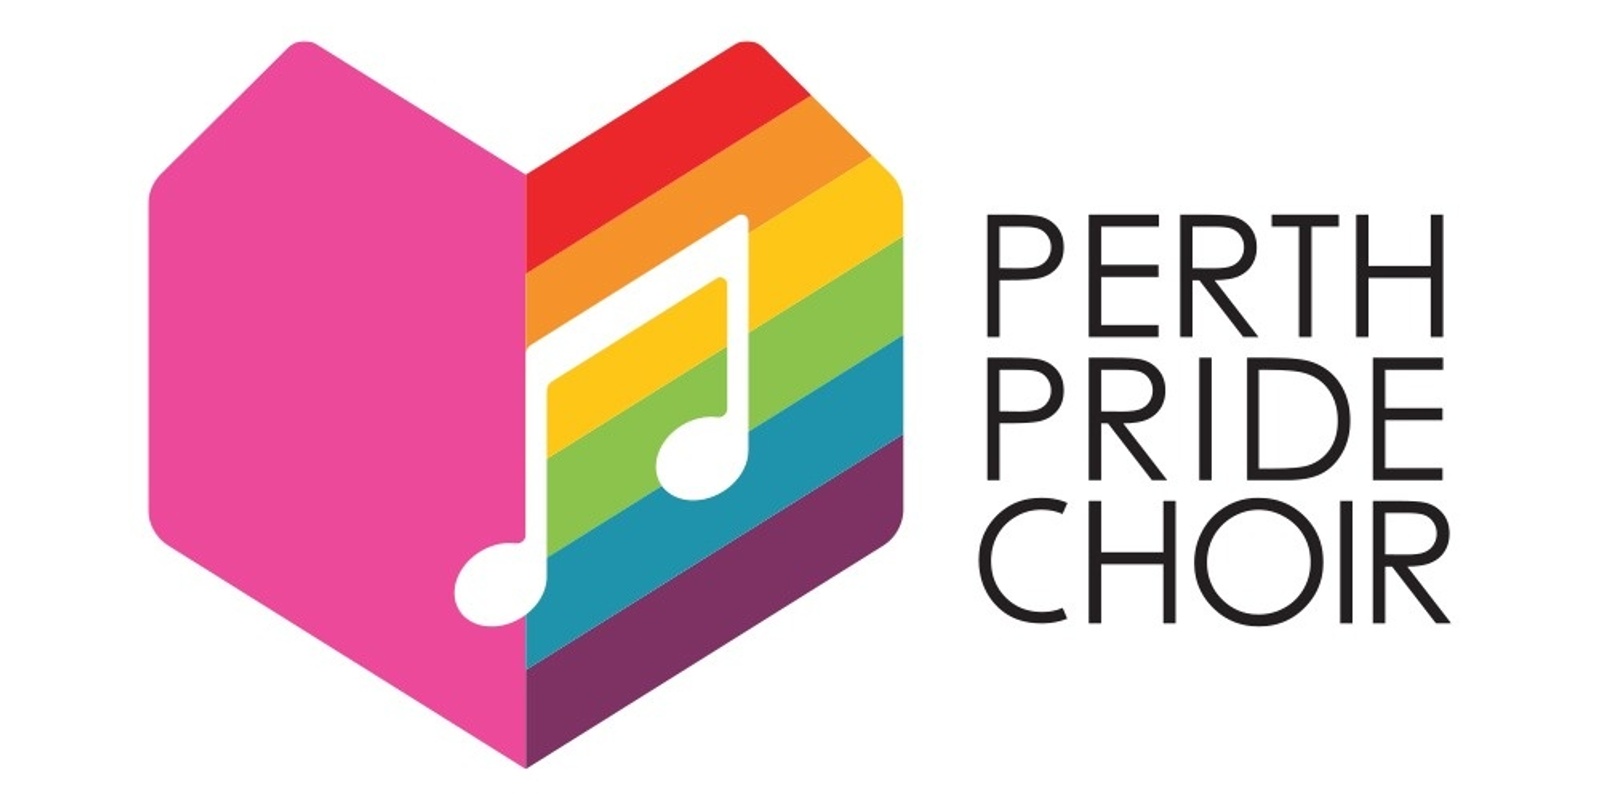 Perth Pride Choir's banner